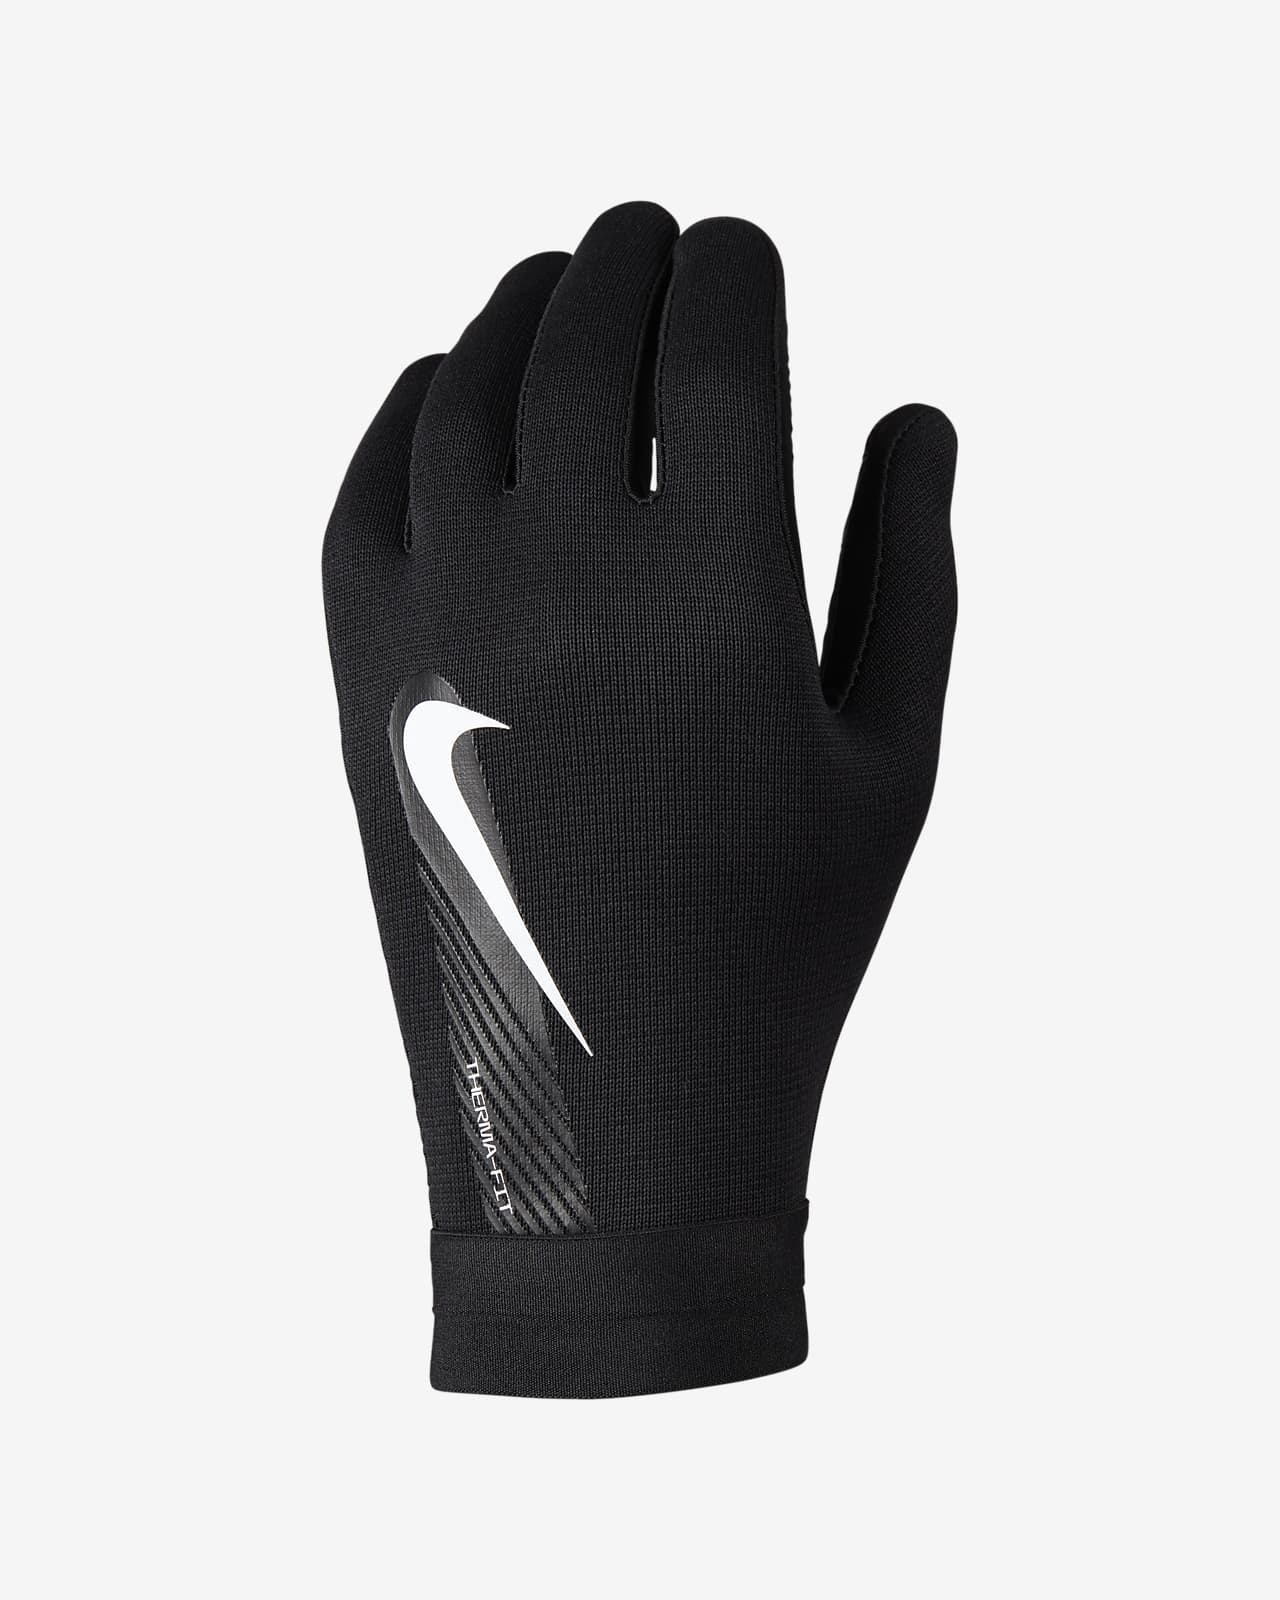 Los cinco mejores guantes de running que puedes comprar en Nike. Nike MX